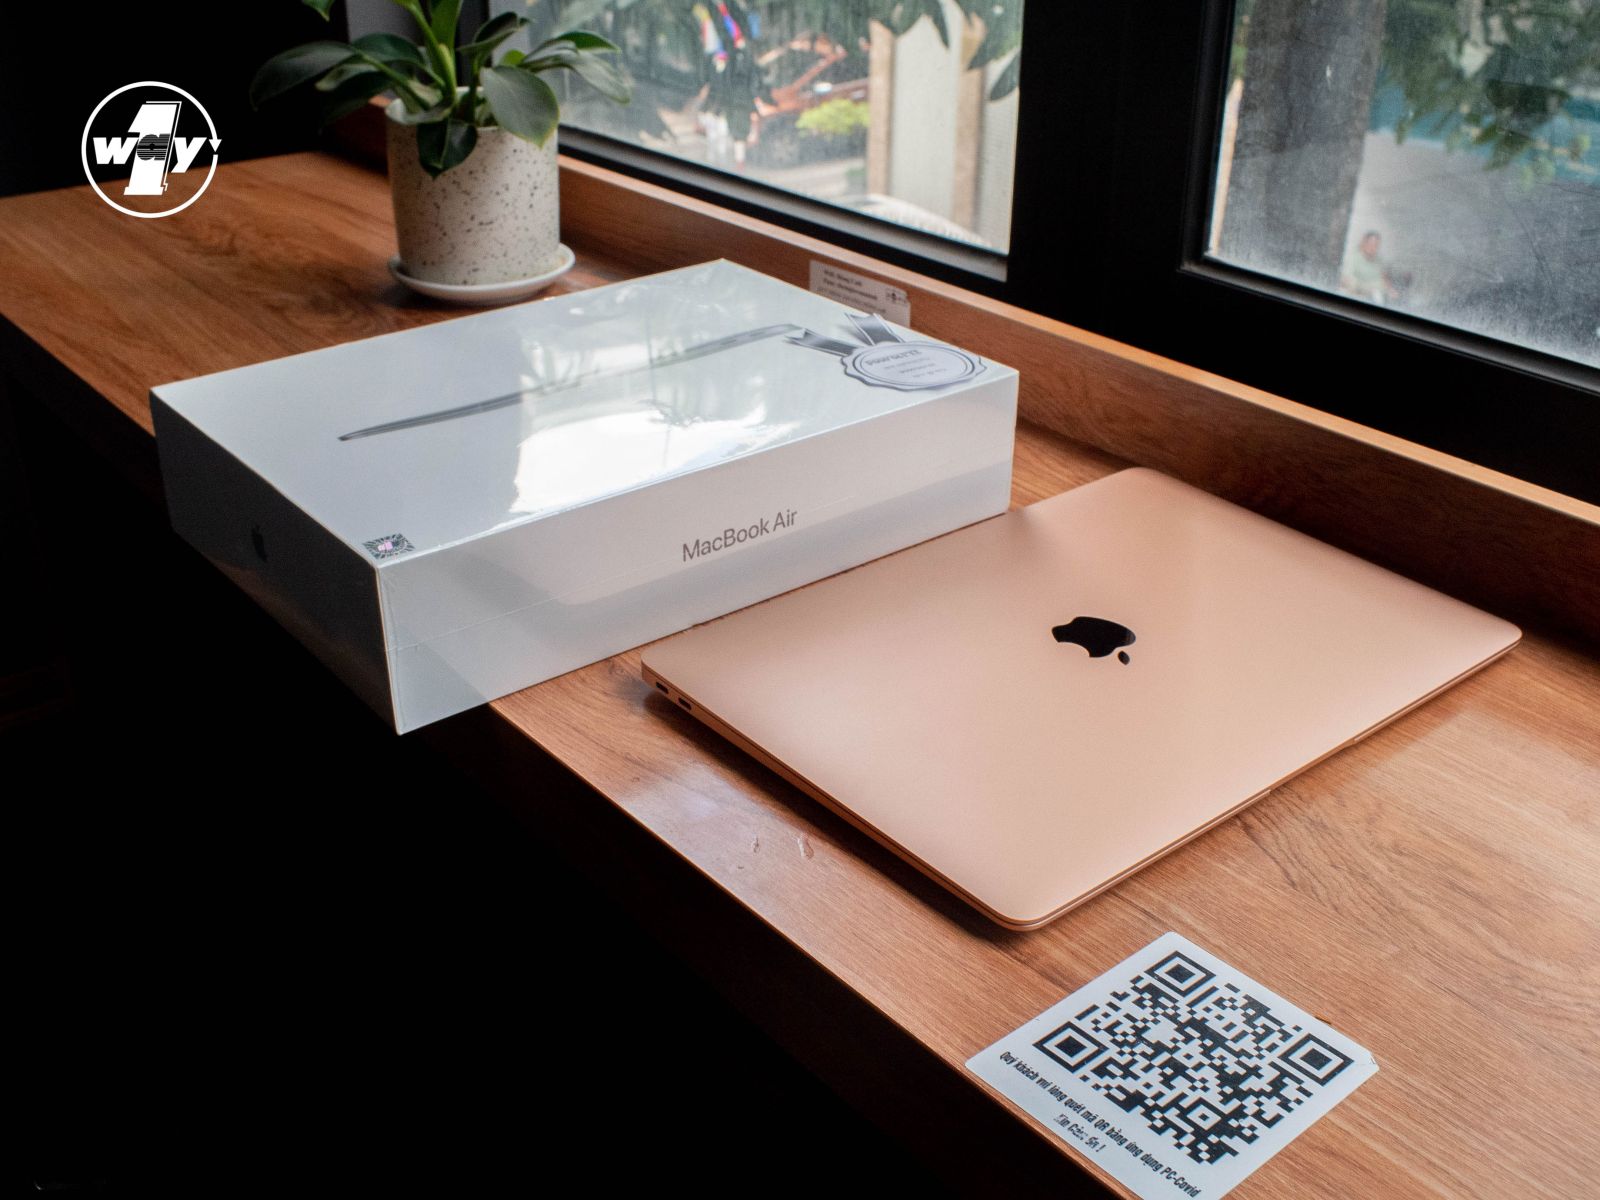 MacBook Air phù nhất là dành cho dân văn phòng, học sinh - sinh viên và người mới học thiết kế 